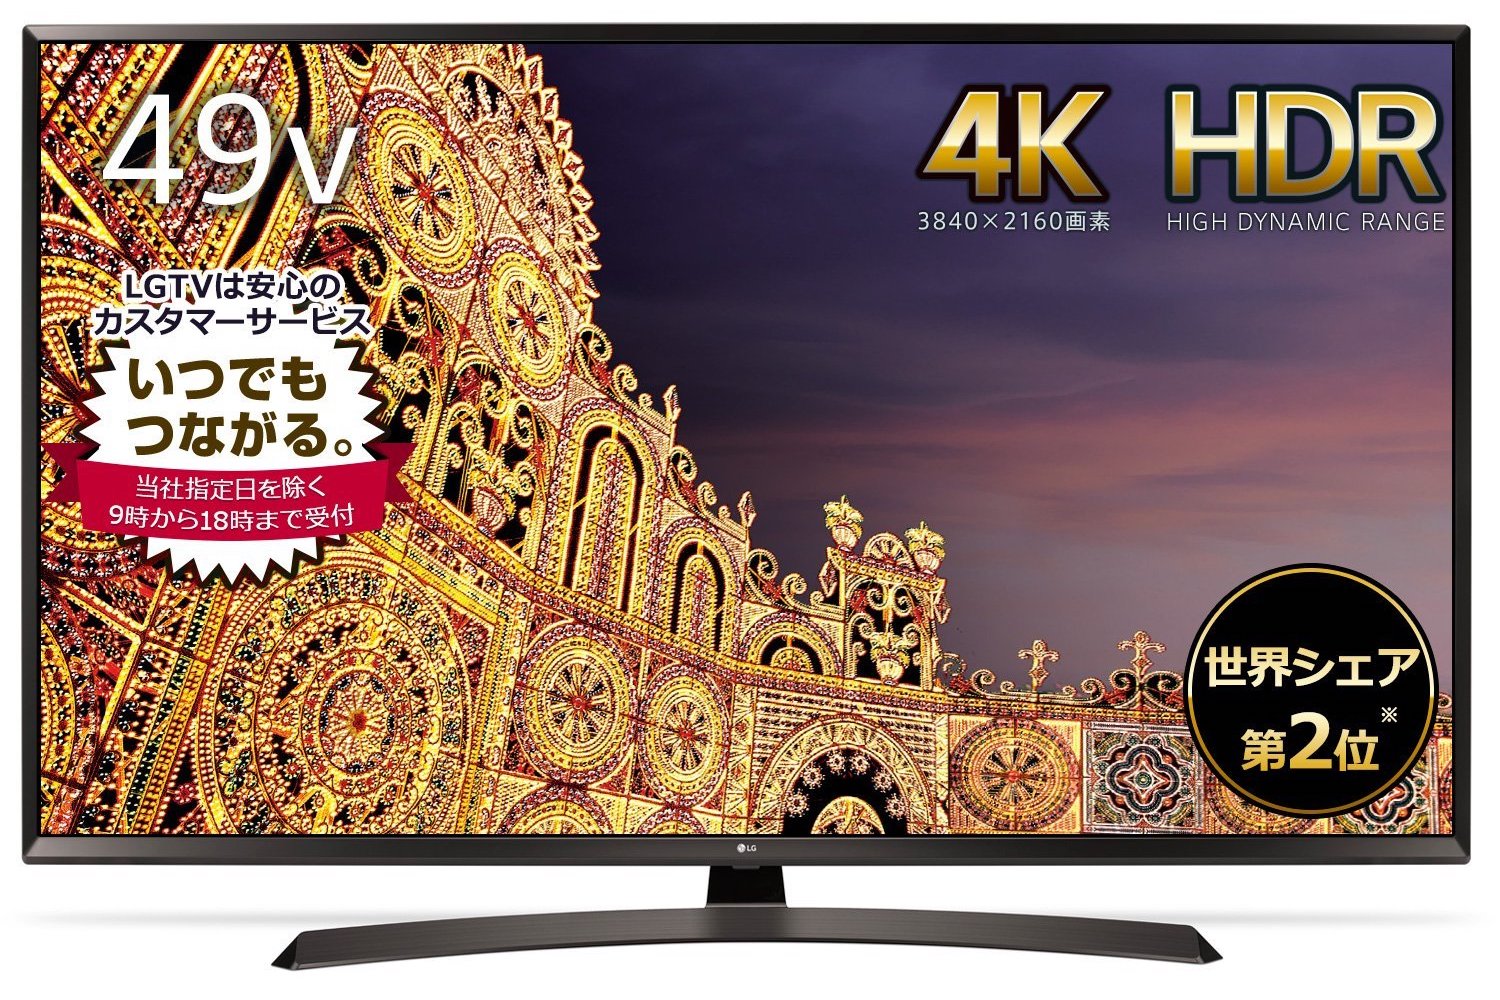 4K・HDR対応のLG製49インチテレビ49UJ630Aが64,800円の特価で販売中 